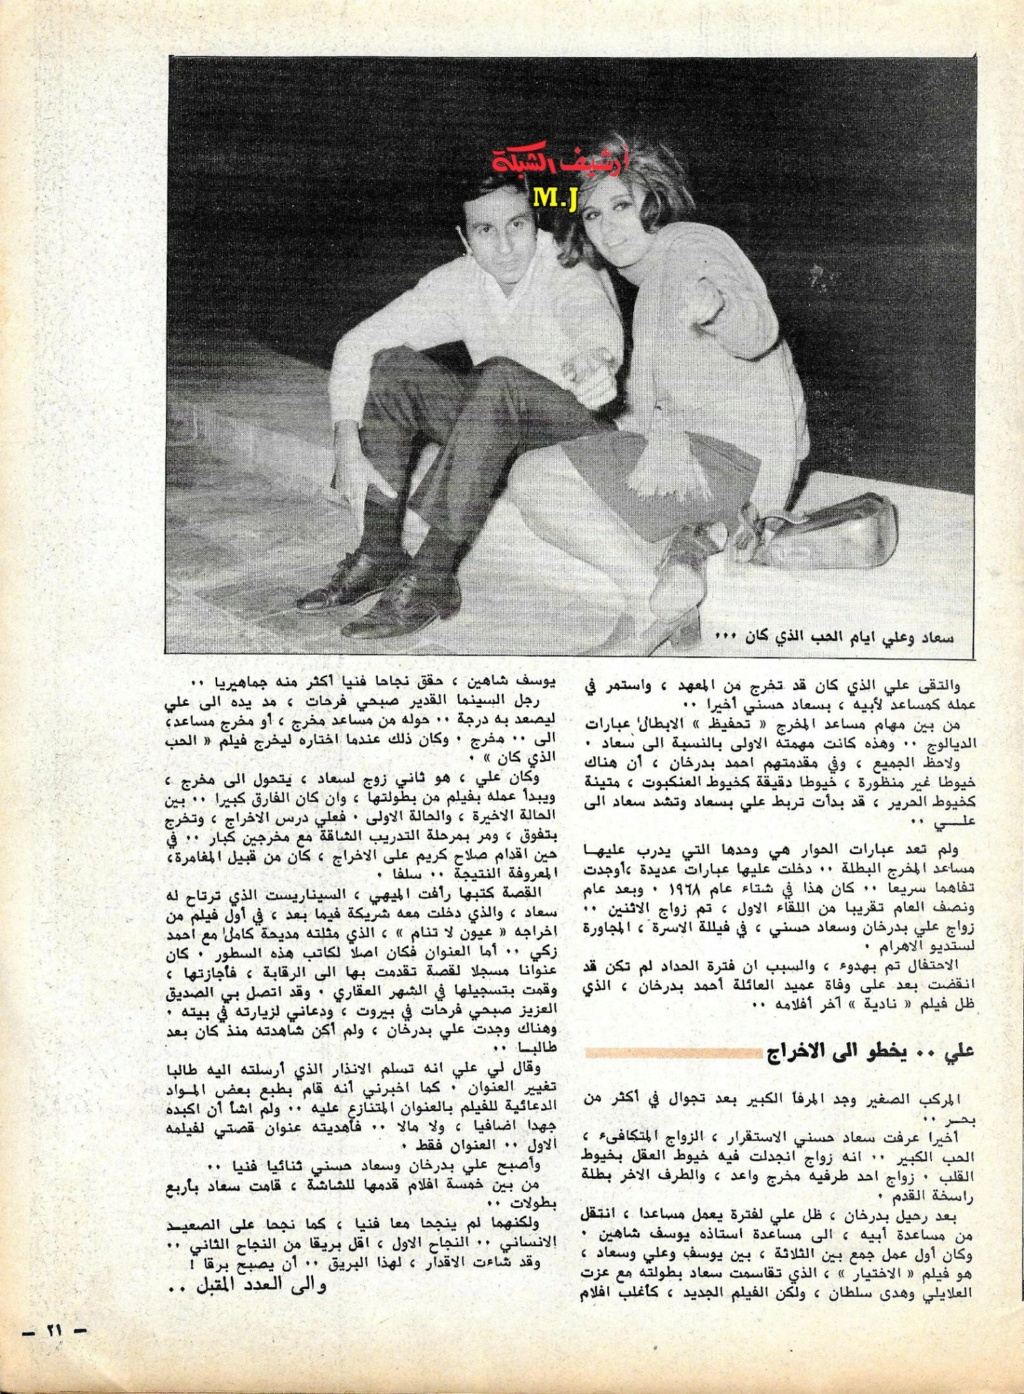 بدرخان - مقال صحفي : سعاد حسني وعلي بدرخان وقصة الحب الذي كان 1981 م 810